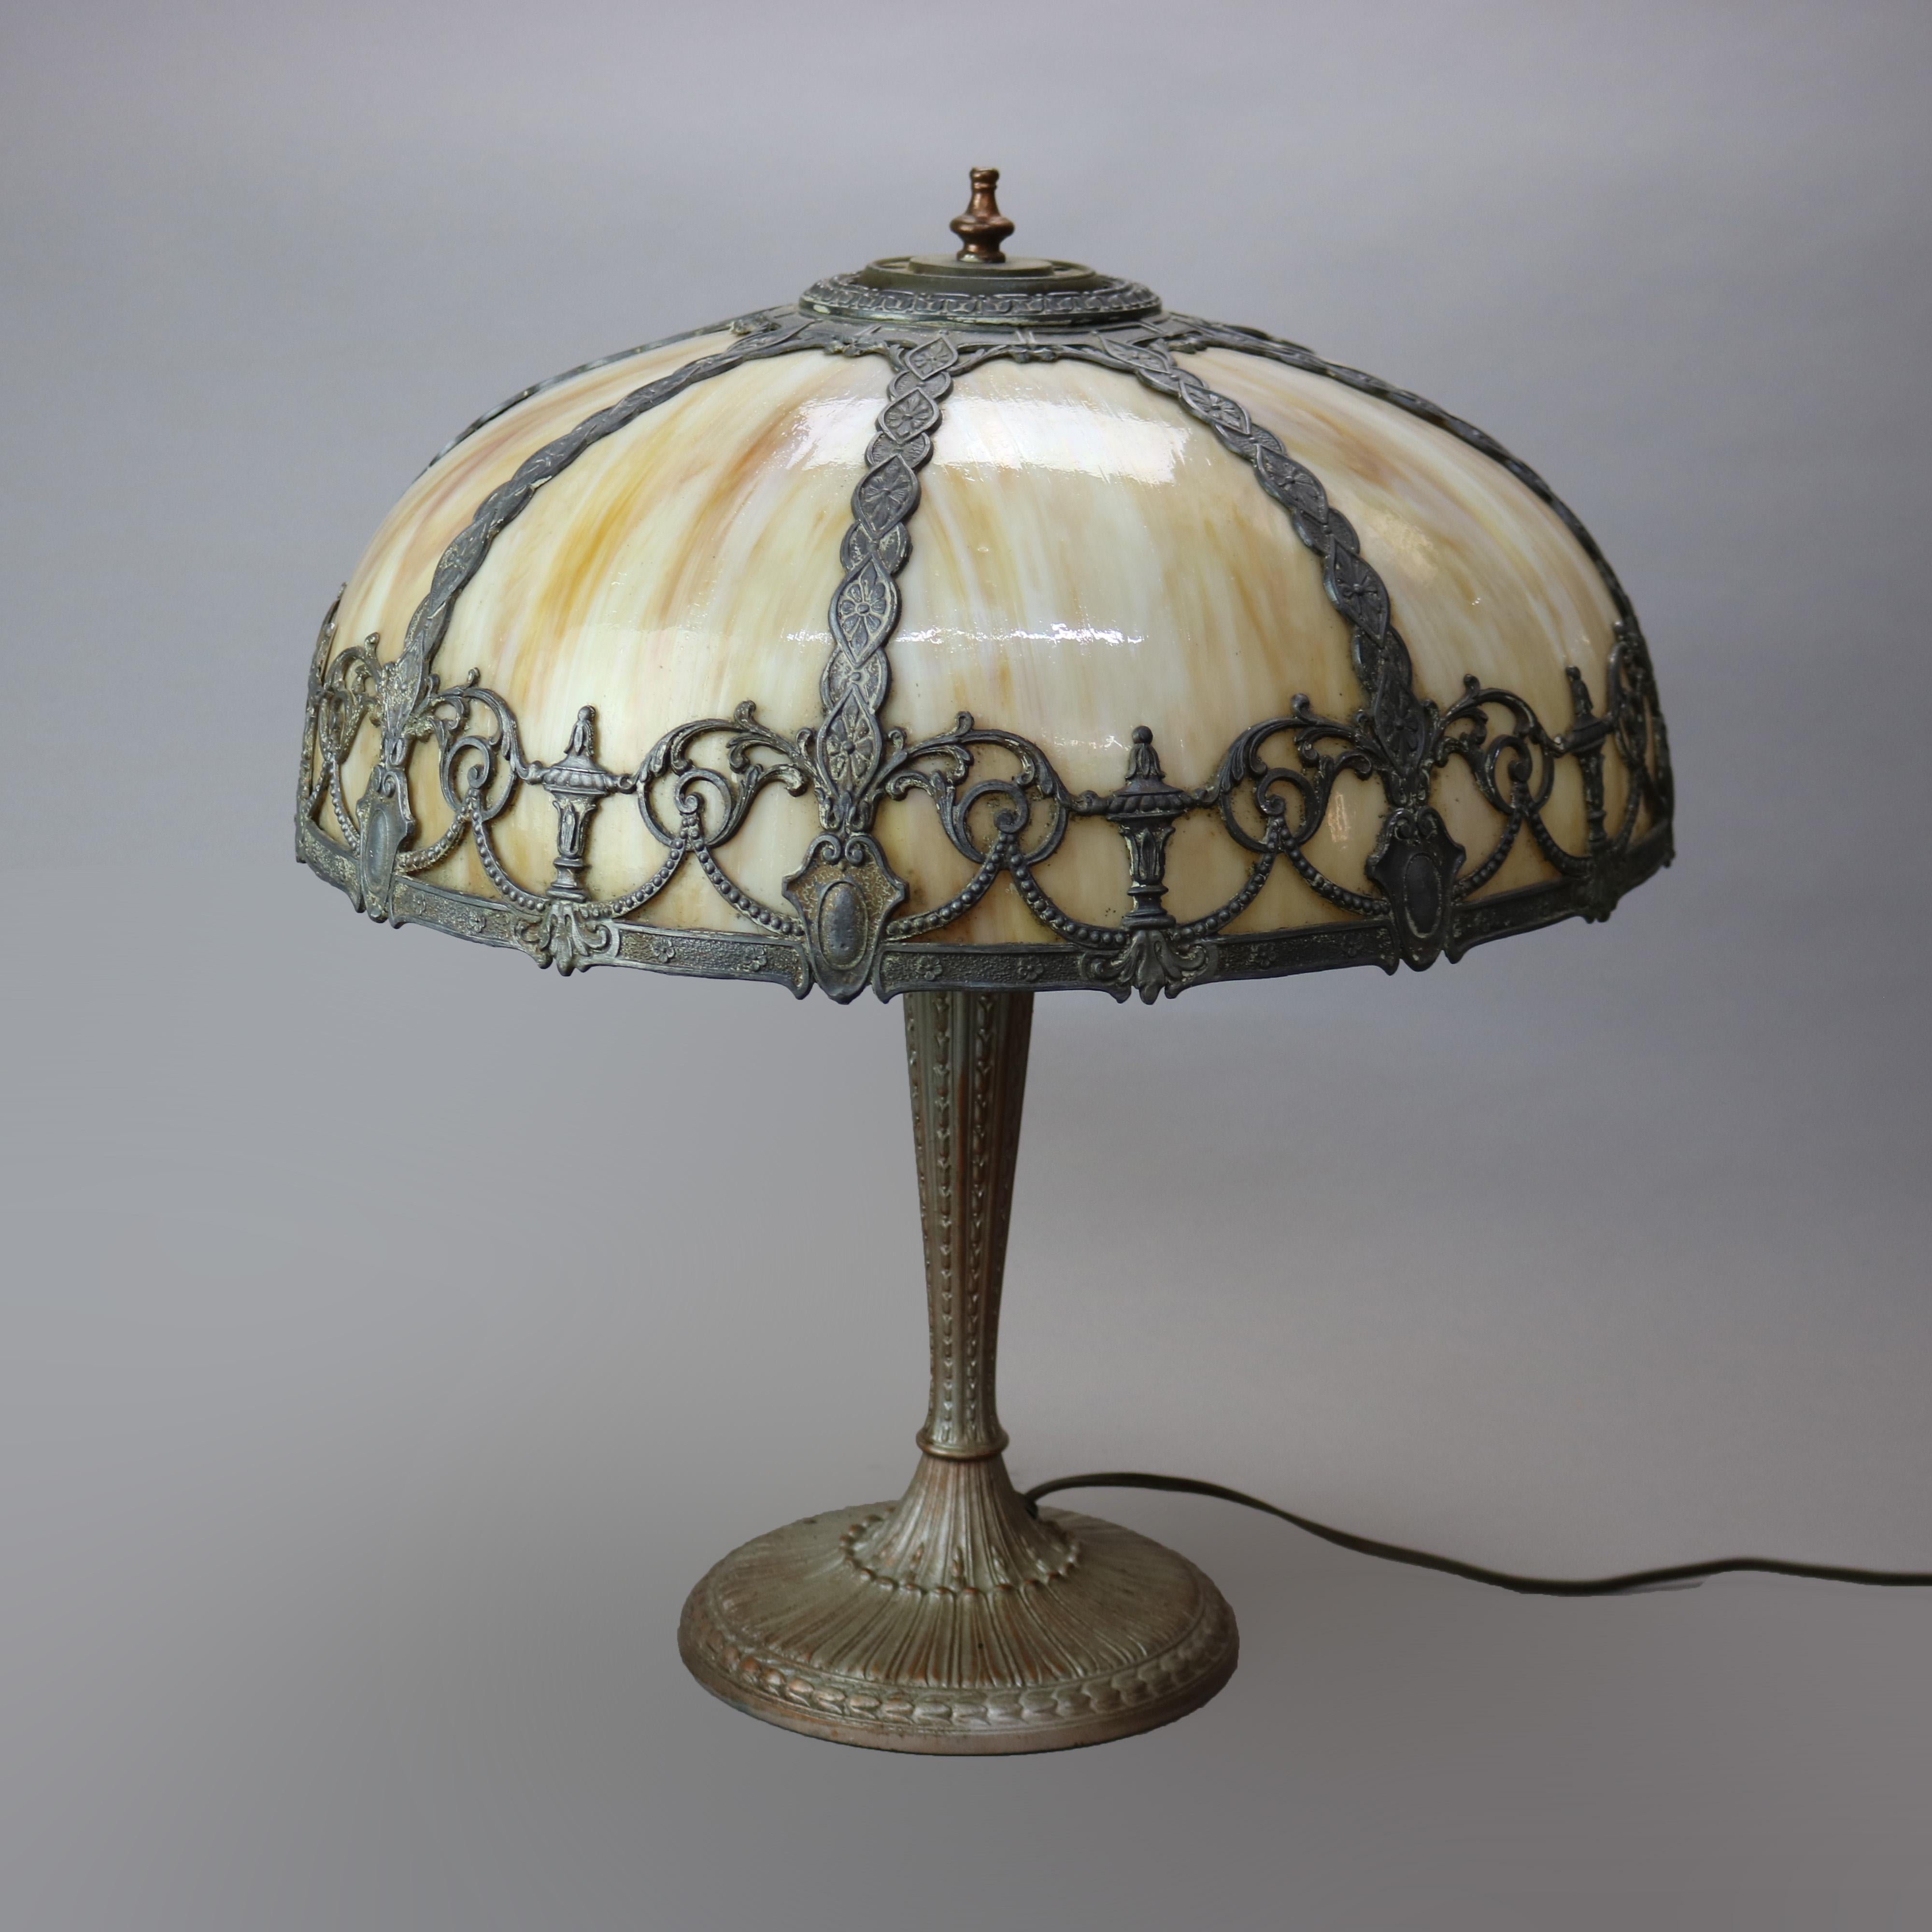 Une lampe de table antique Arts & Crafts à la manière de Bradley et Hubbard offre un abat-jour en forme de dôme avec un abat-jour moulé comportant une urne, une guirlande, un bouclier et des éléments feuillus en volutes. Les panneaux en verre de